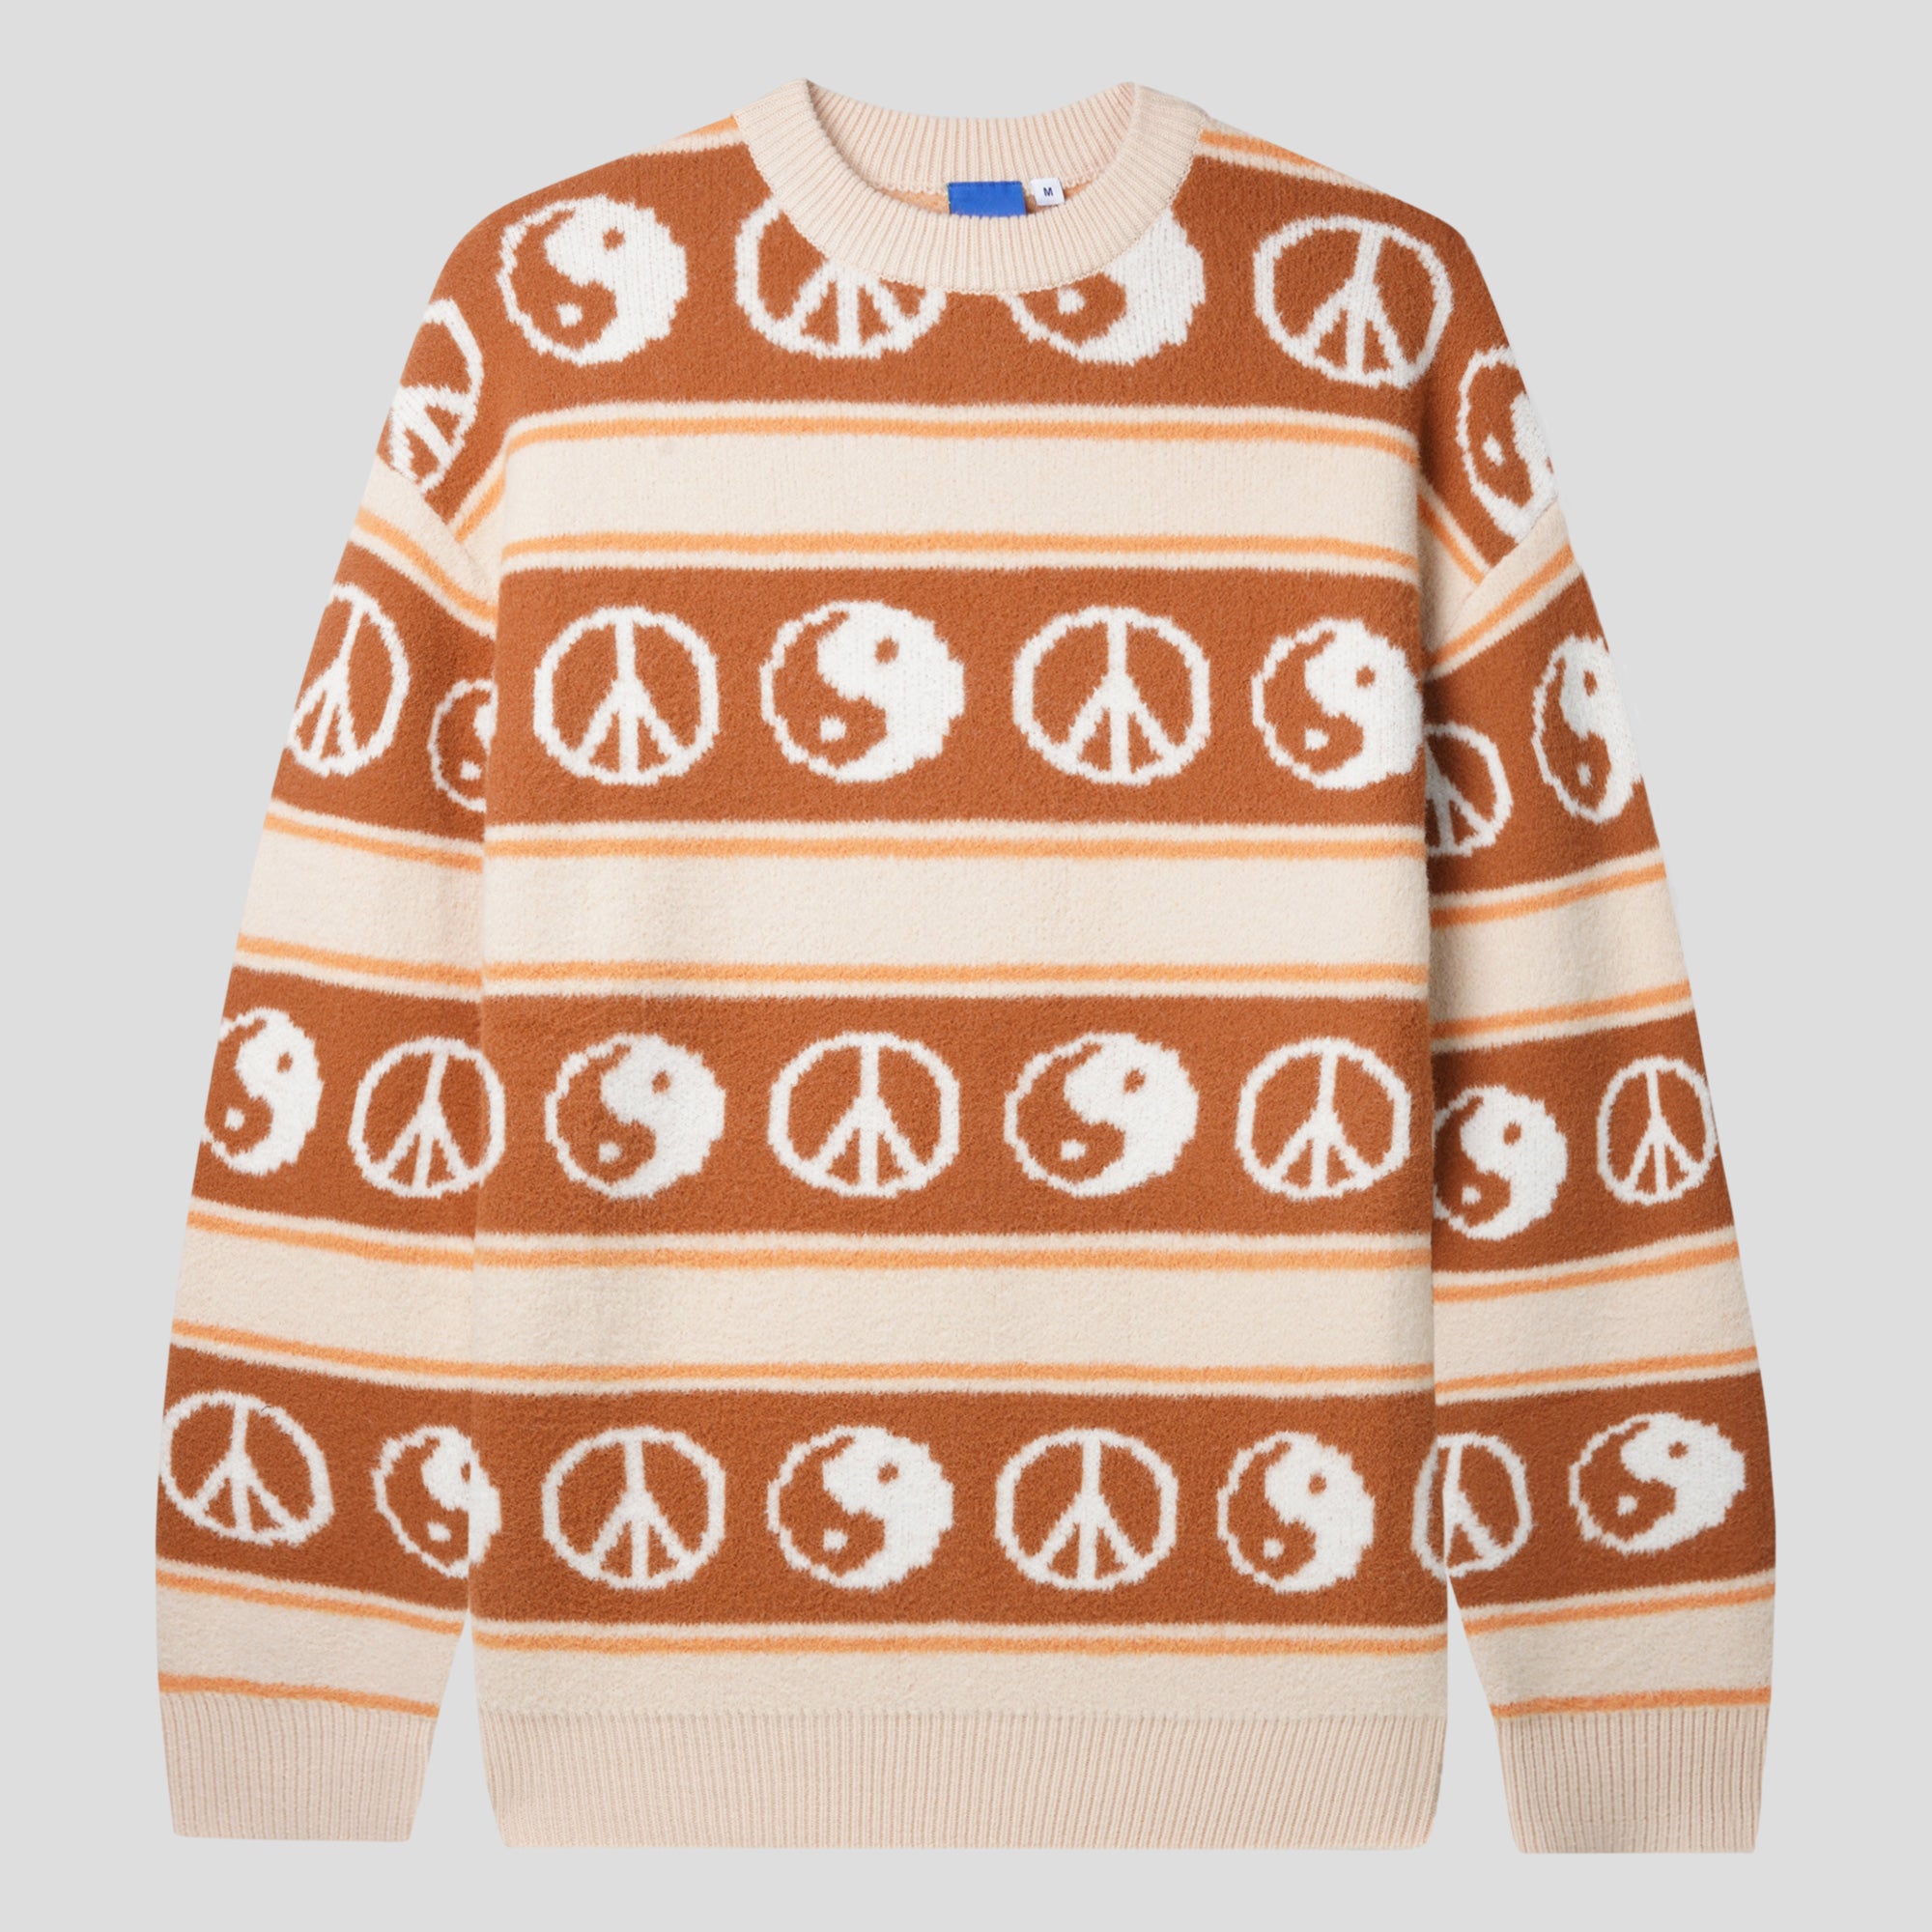 Lo-Fi Balance Mohair Knitted Sweater - Tan / Brown / Orange